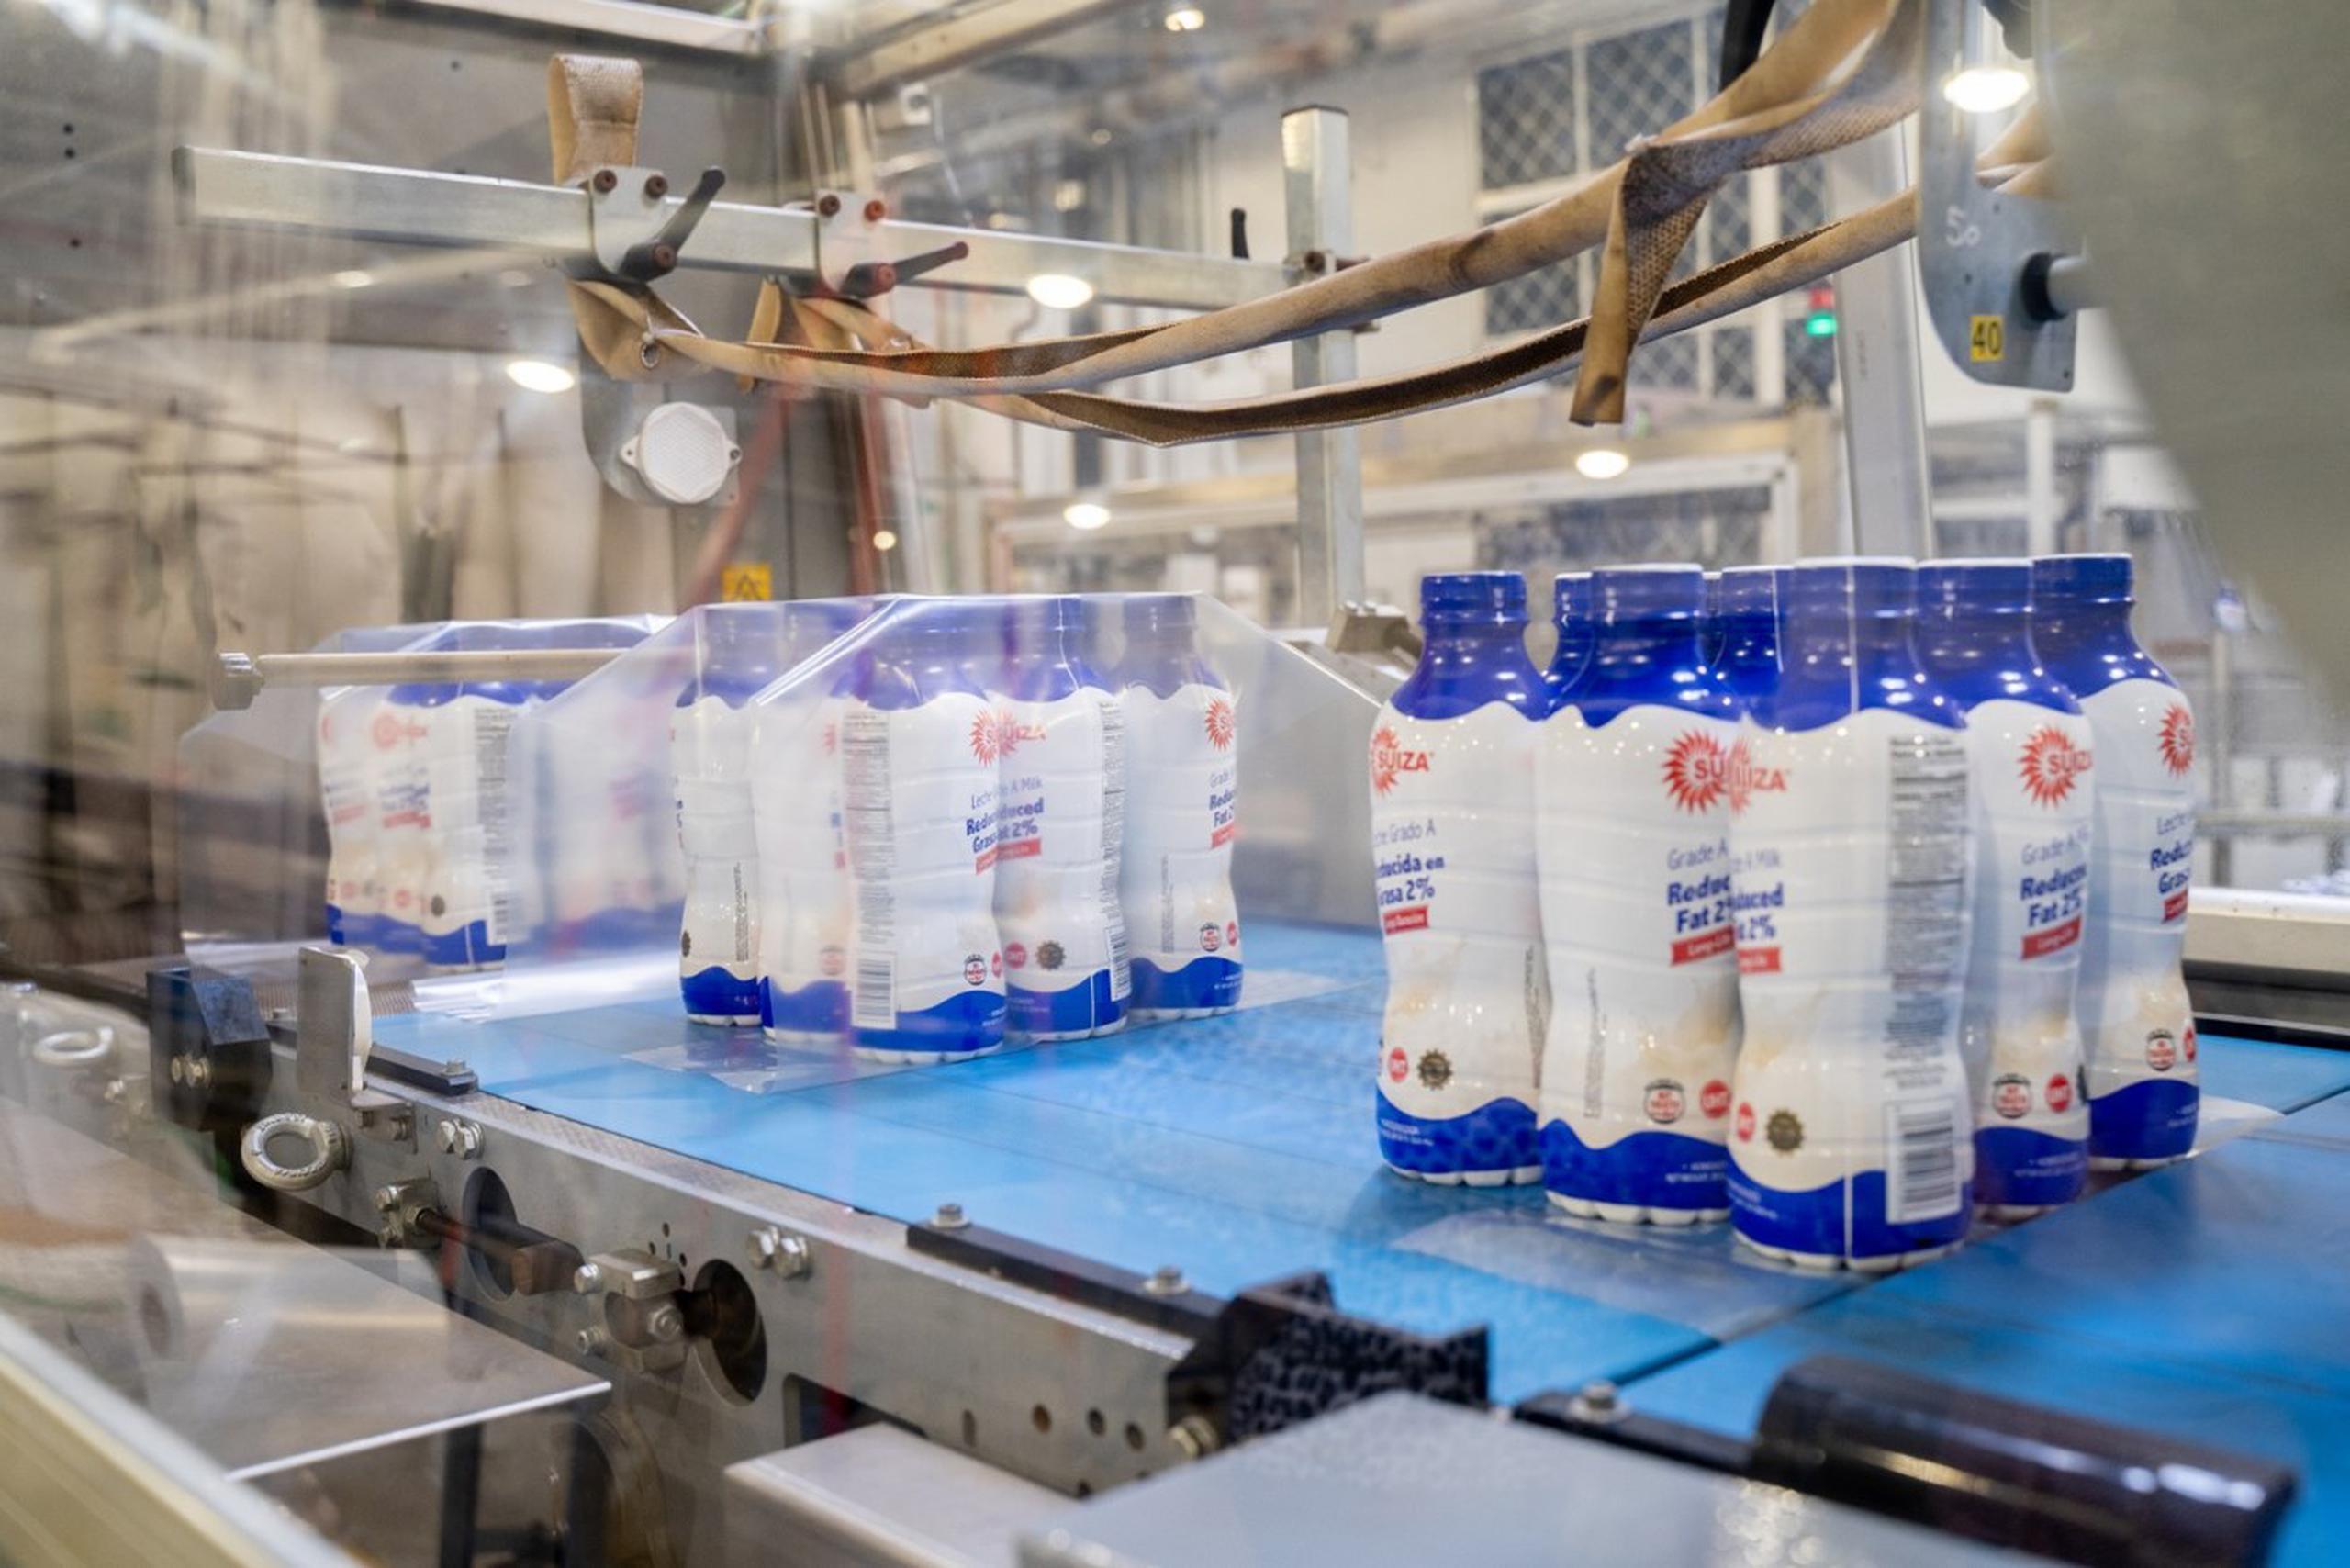 Suiza Dairy se enfoca en complacer las necesidades del mercado puertorriqueño, mediante la innovación constante de productos, siempre comprometidos con darle a la gente el buen servicio que se merece y espera.